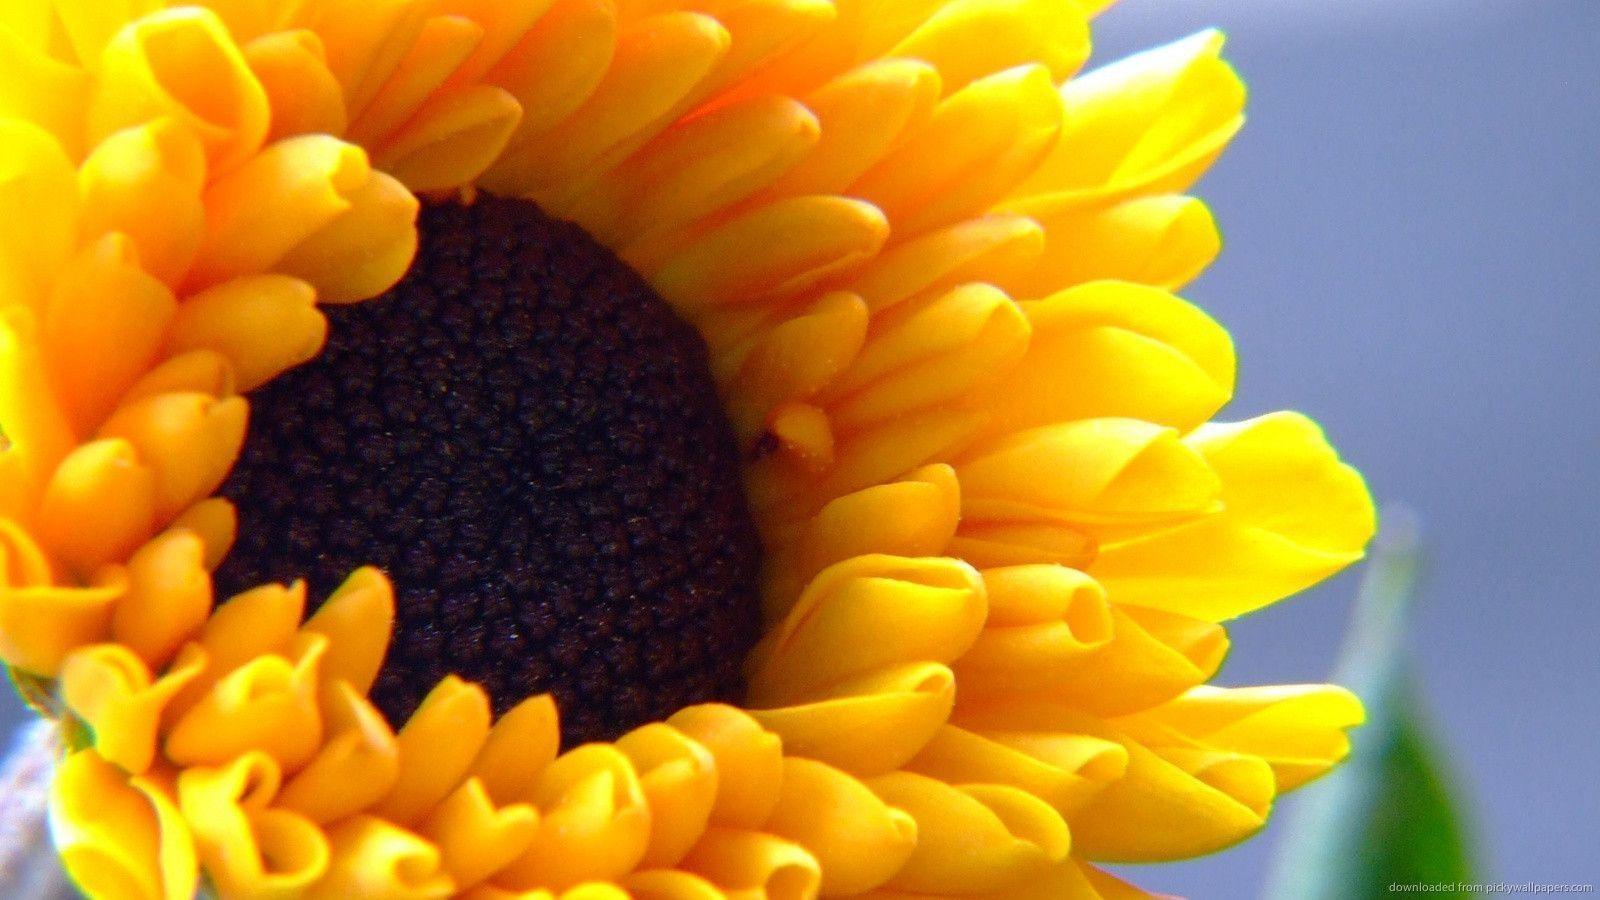 Download 1600x900 Sunflower Wallpaper